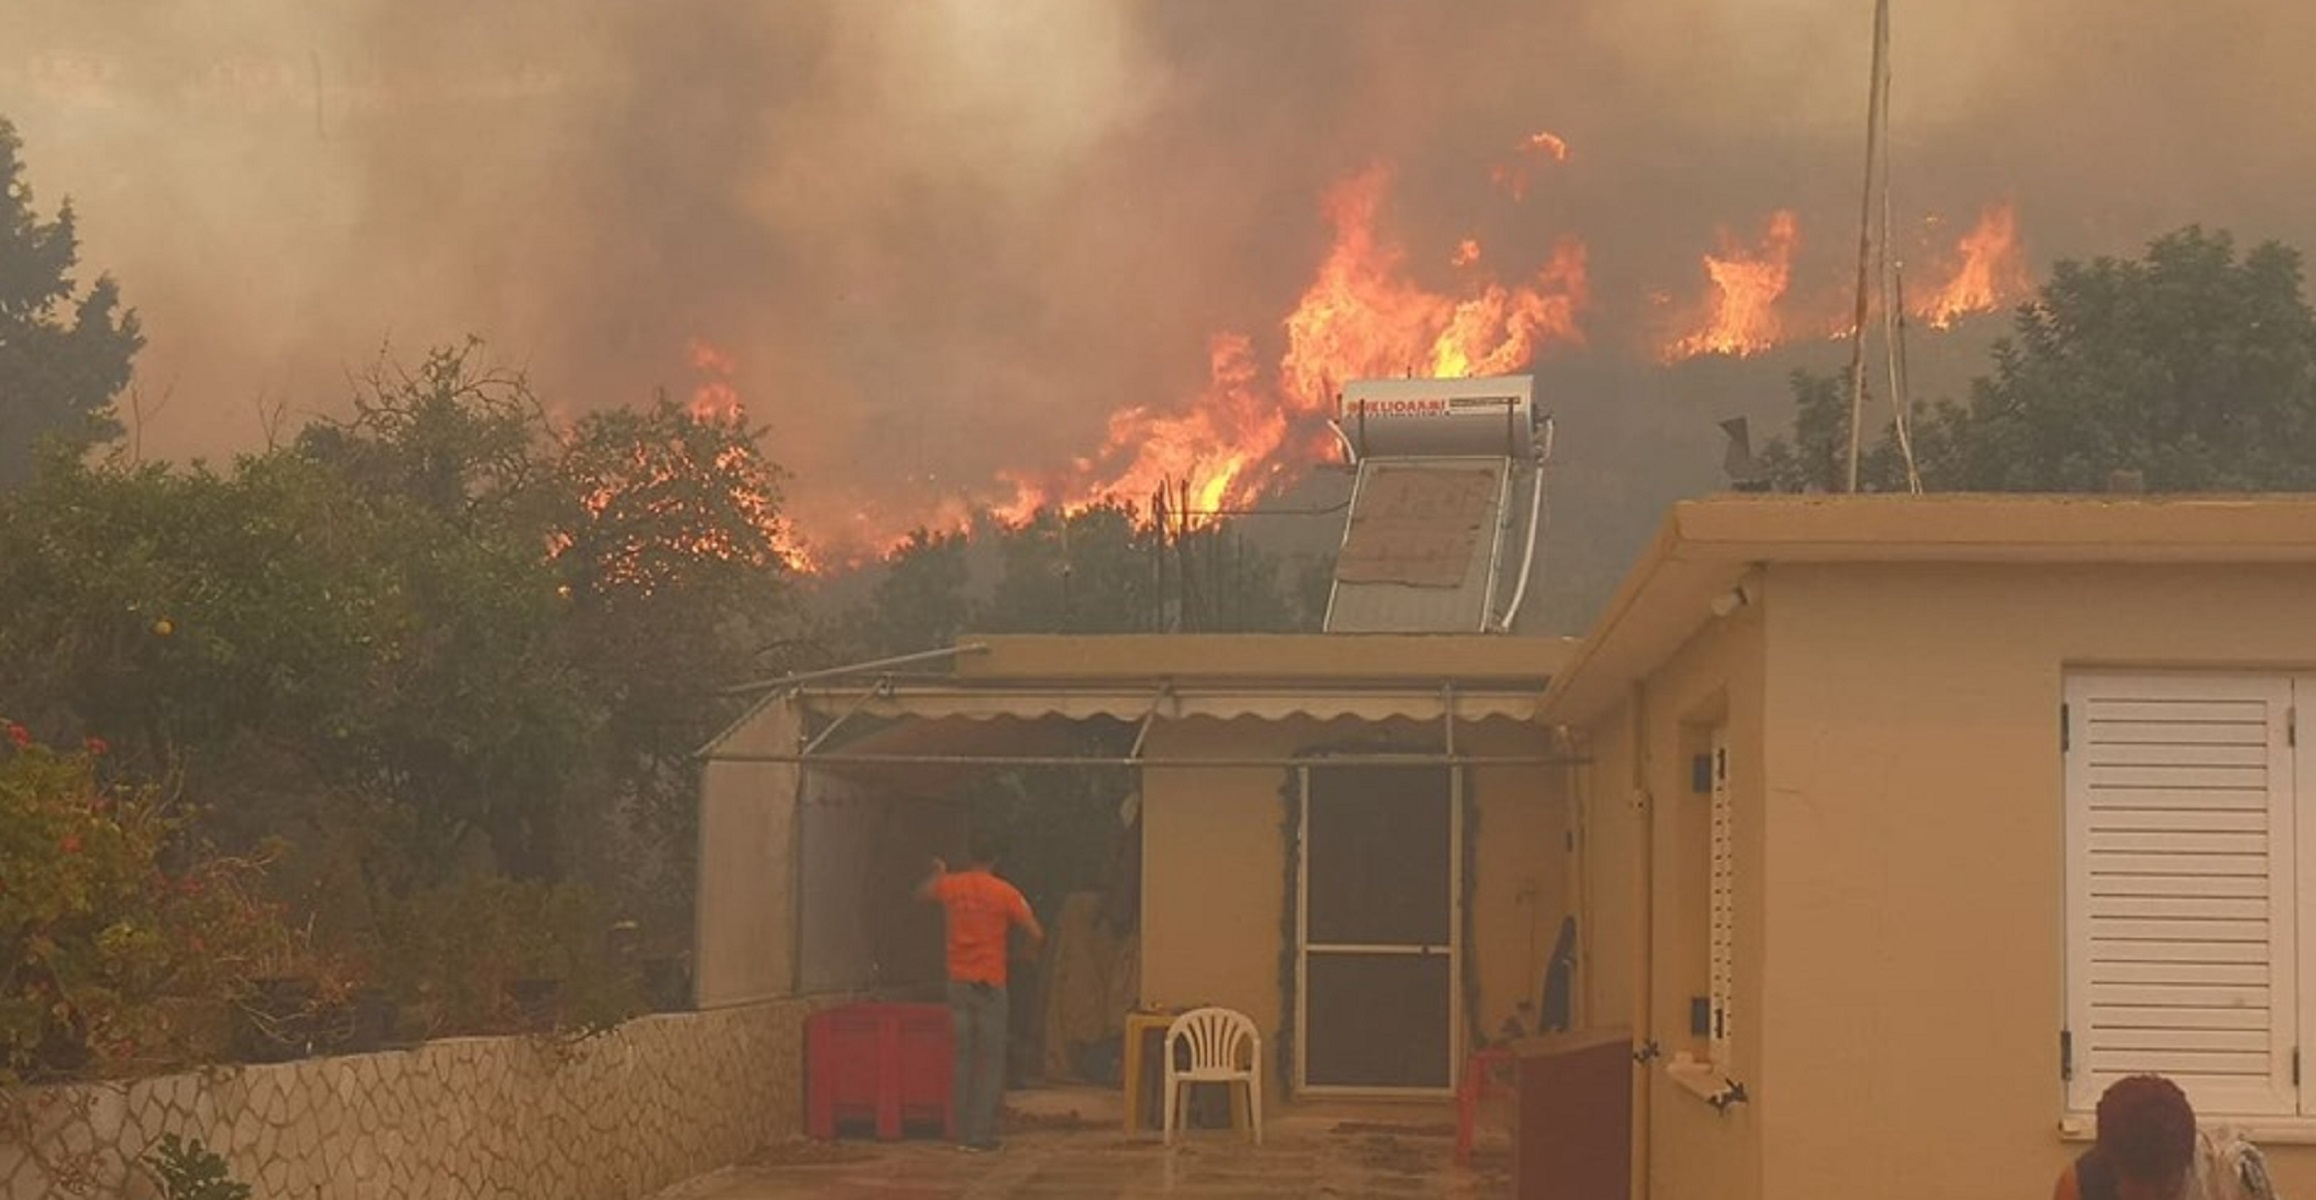 Ζάκυνθος: Η φωτιά πλησιάζει και κυκλώνει σπίτια – Εφιαλτικές εικόνες στο χωριό Κερί – Κάτοικοι τρέχουν να σωθούν [pics, video]